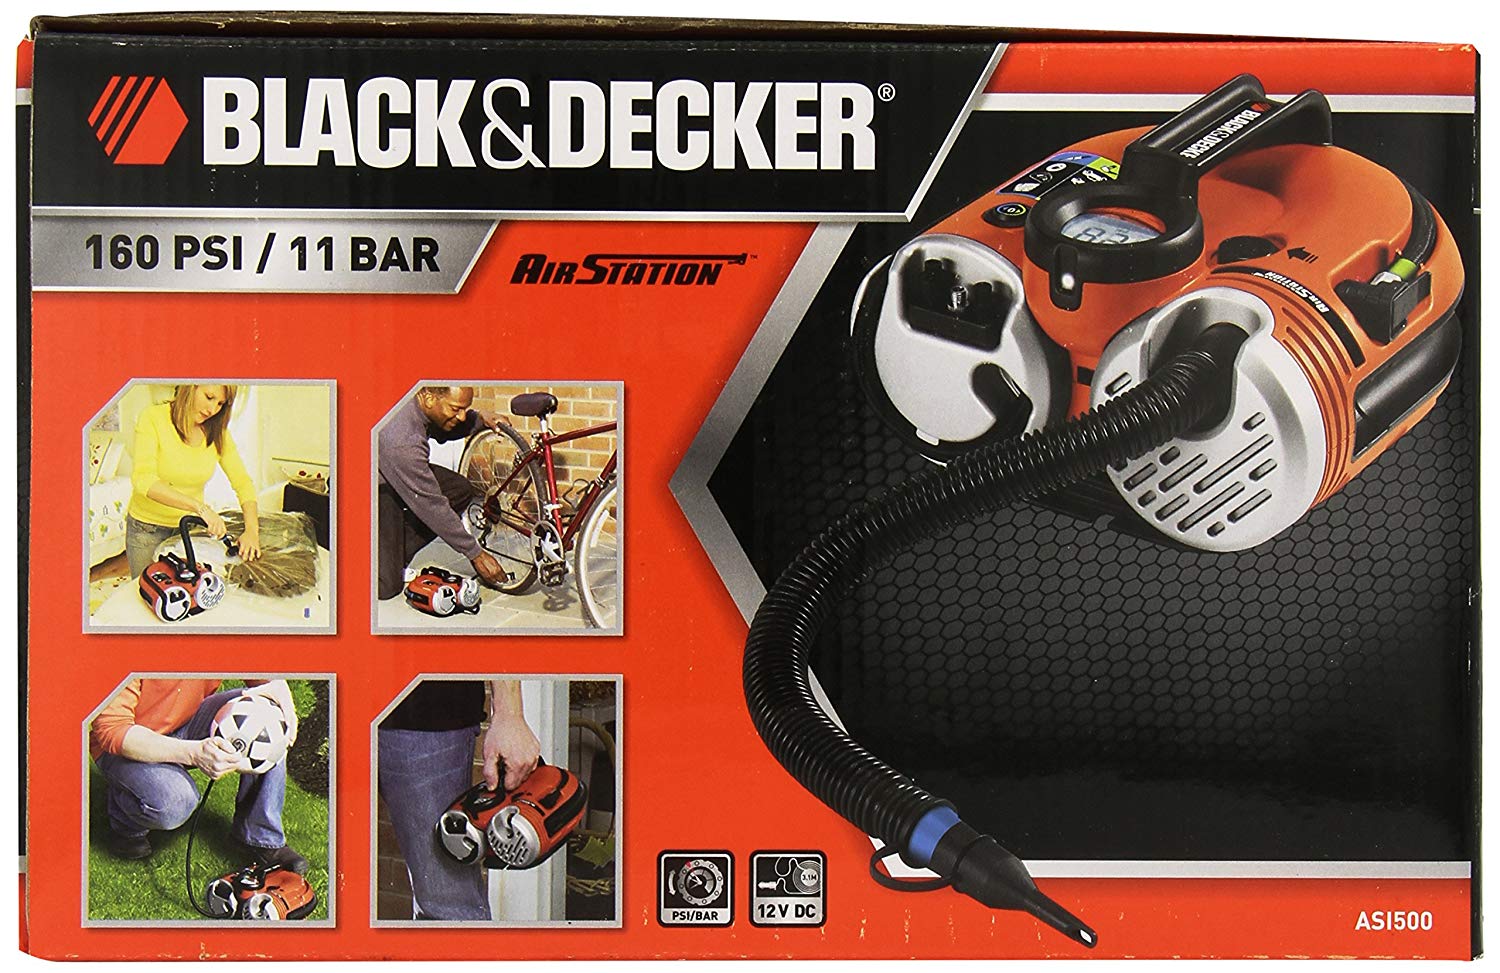 Découvrez le prix du Compresseur Black&Decker sur Amazon